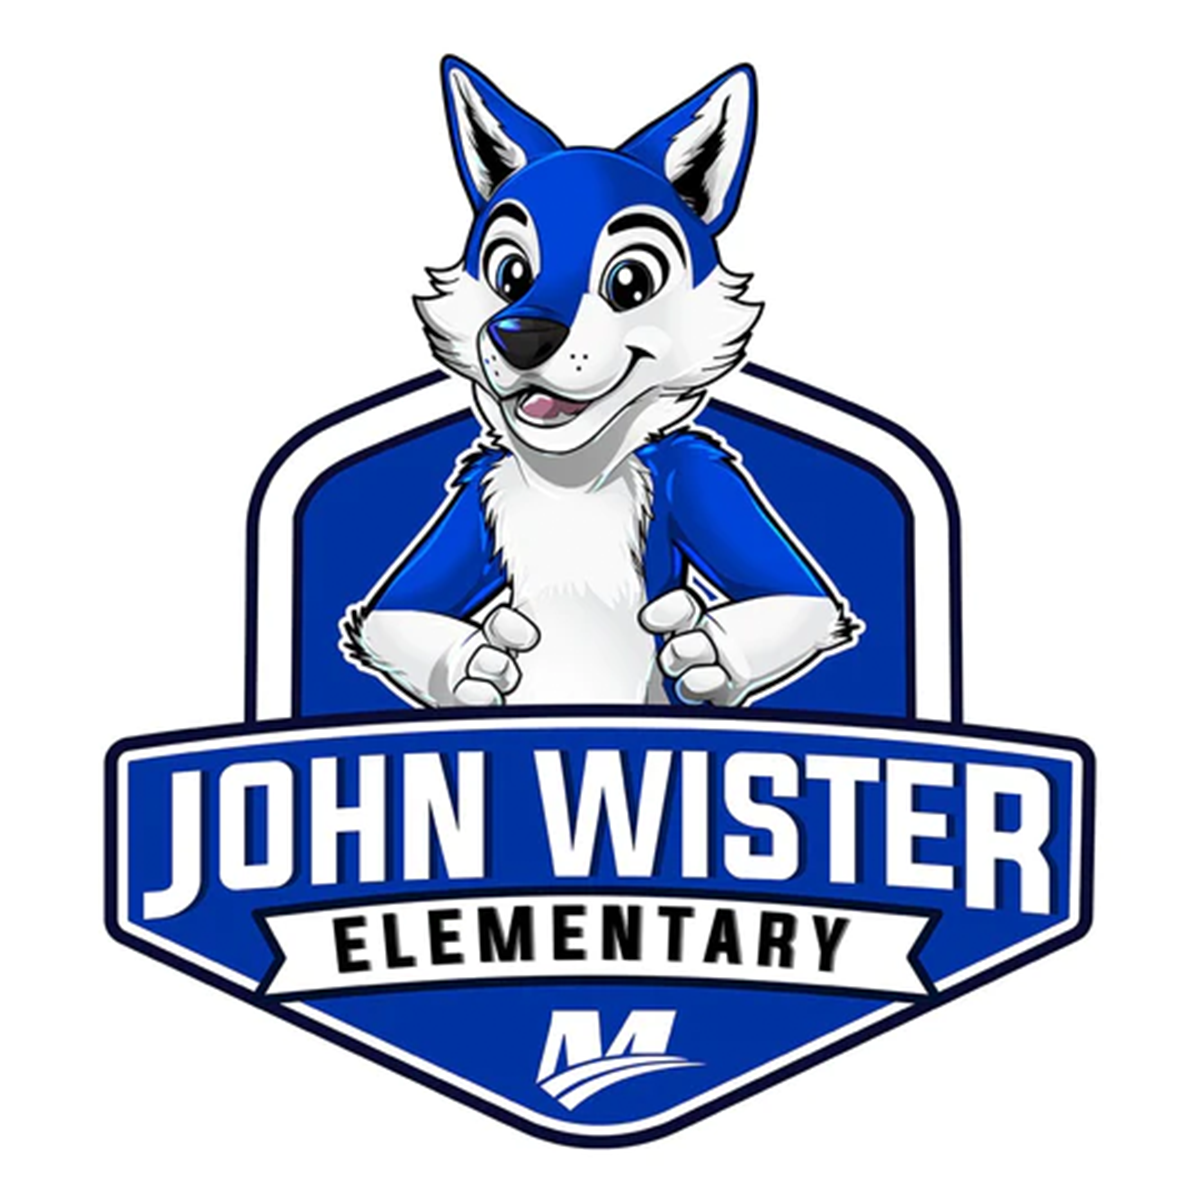 John Wister Elementary